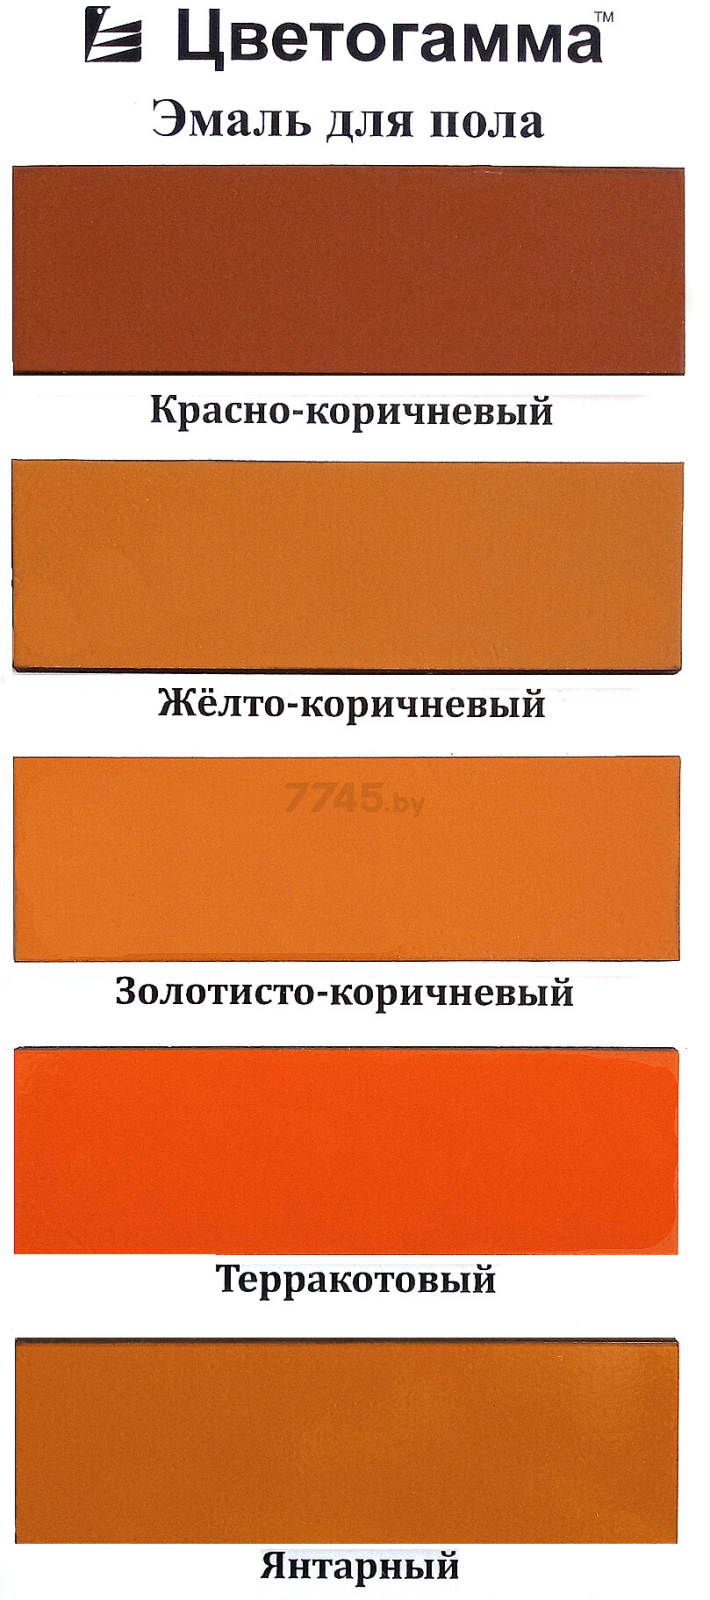 Эмаль пентафталевая ЦВЕТОГАММА ПФ-266 для пола желто-коричневая 1,8 кг - Фото 2